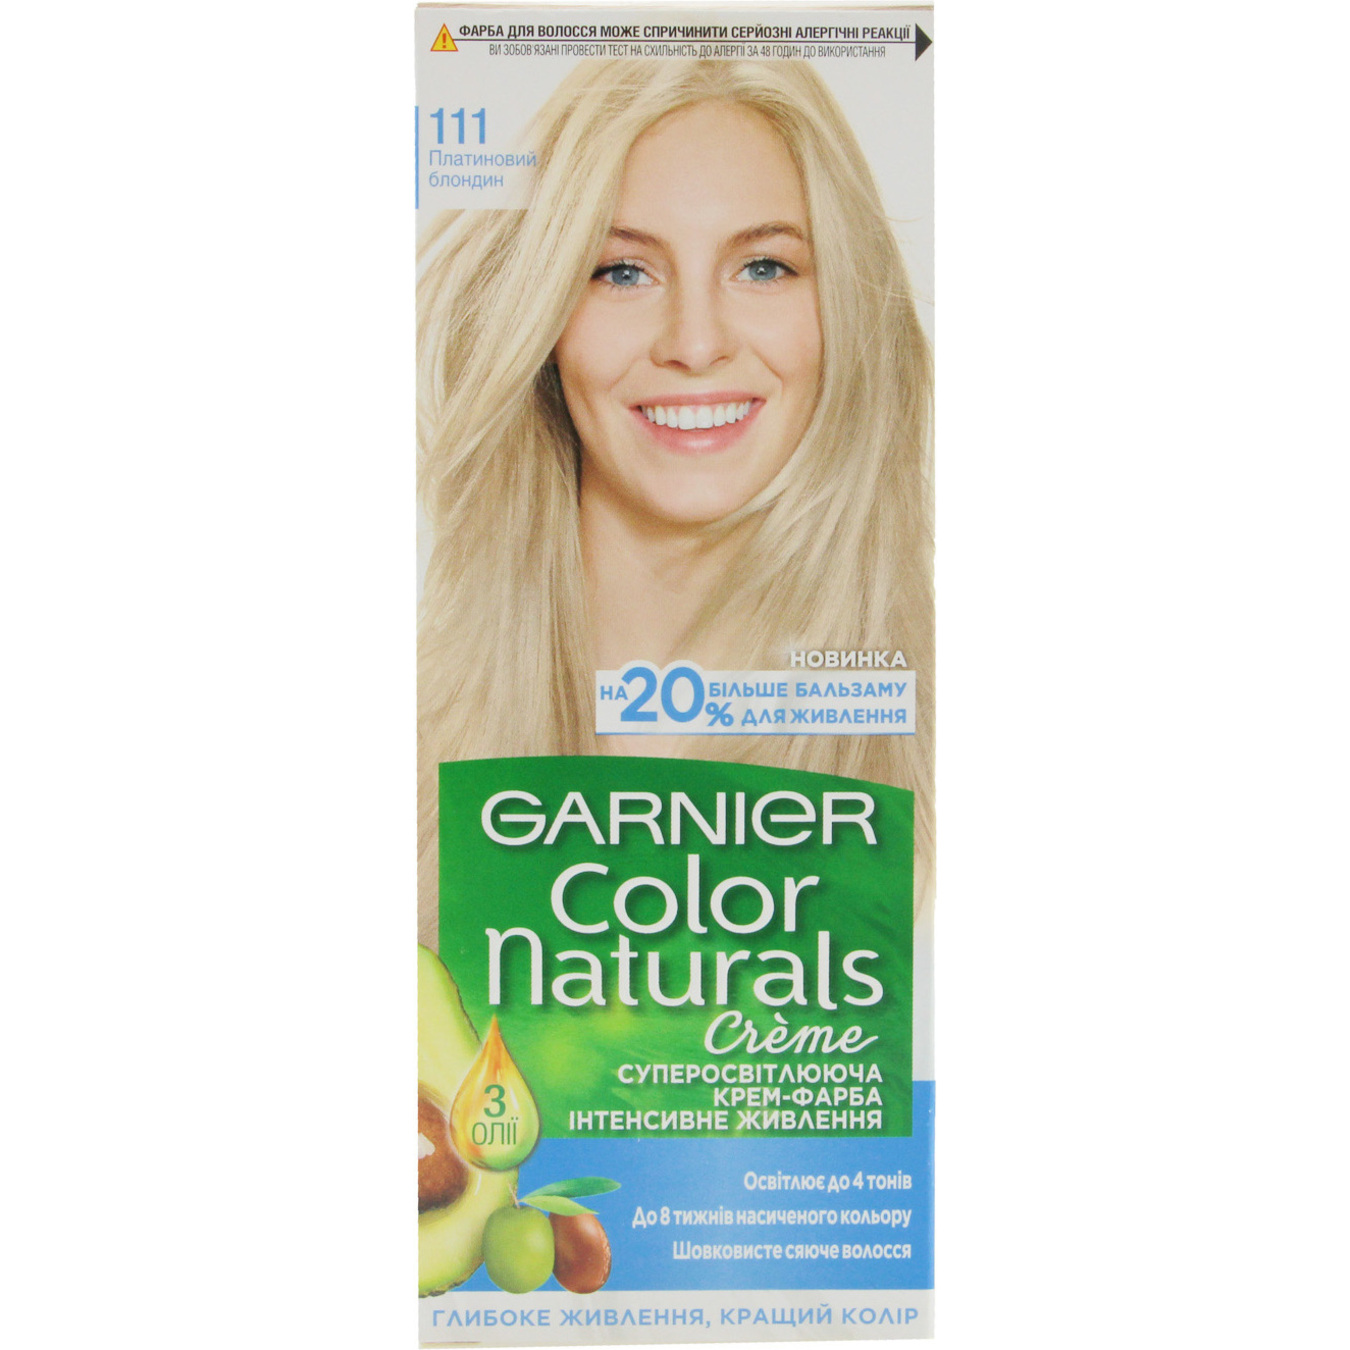 Крем-фарба для волосся Garnier Color Naturals 111 Платиновий блондин